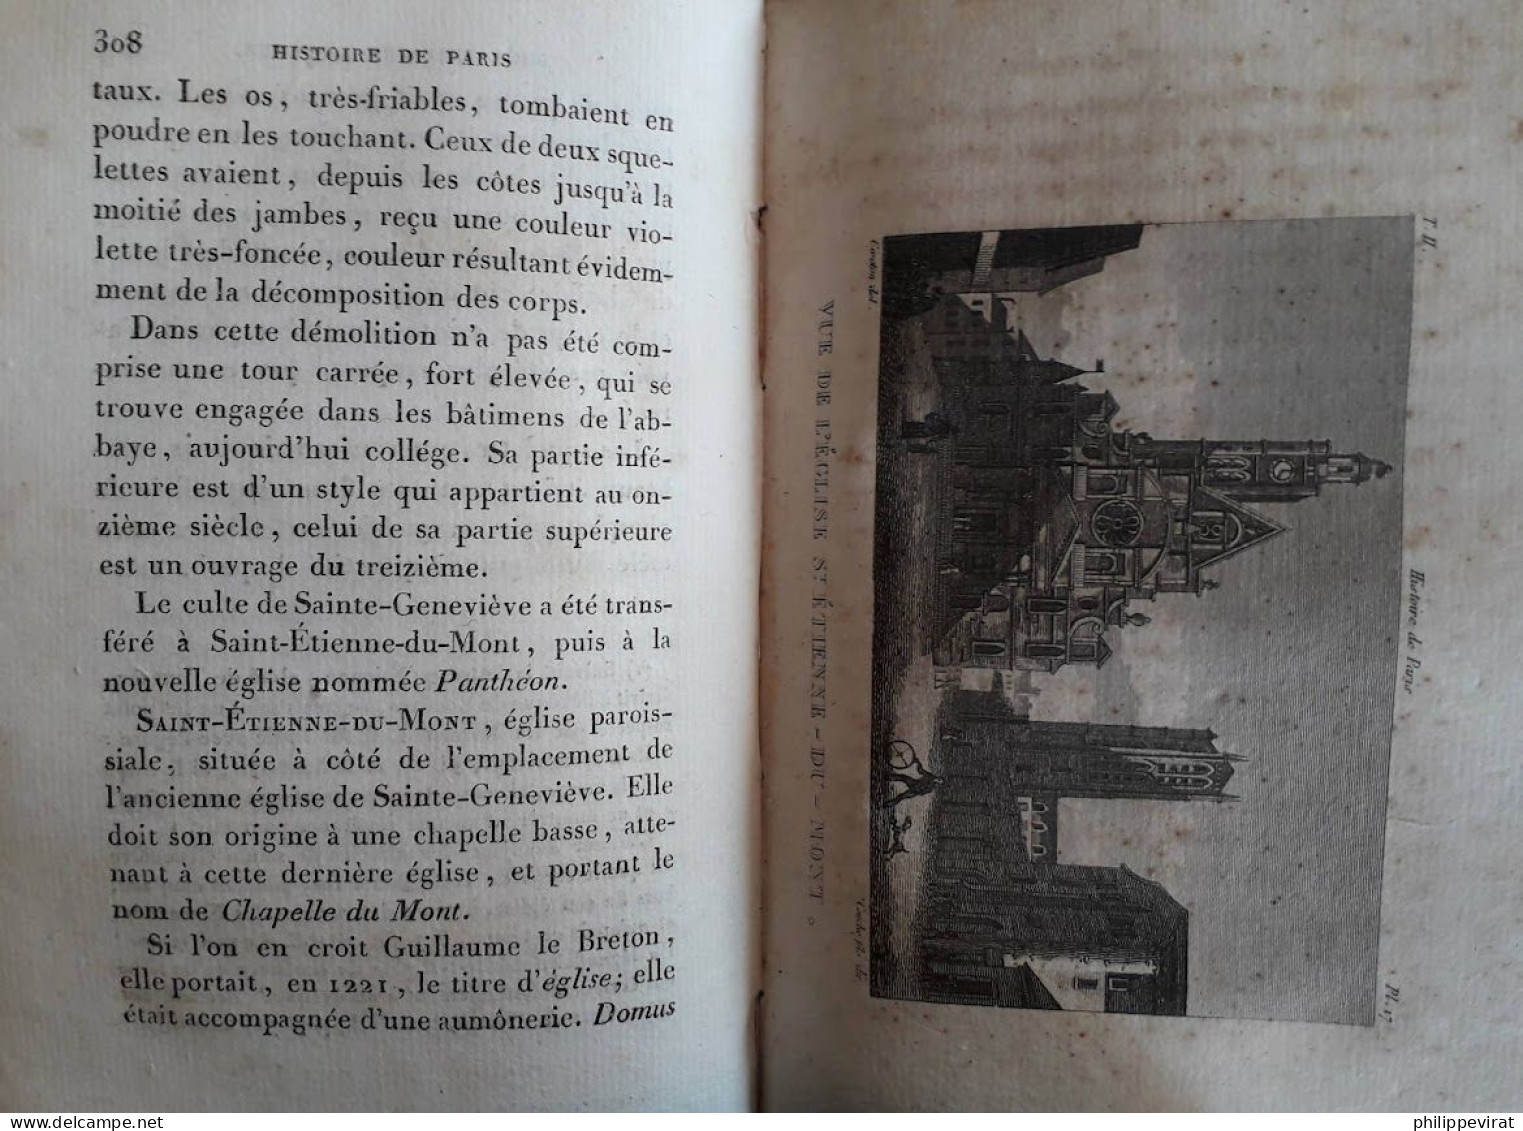 Jacques-Antoine Dulaure - Histoire civile, physique et morale de Paris - 1825